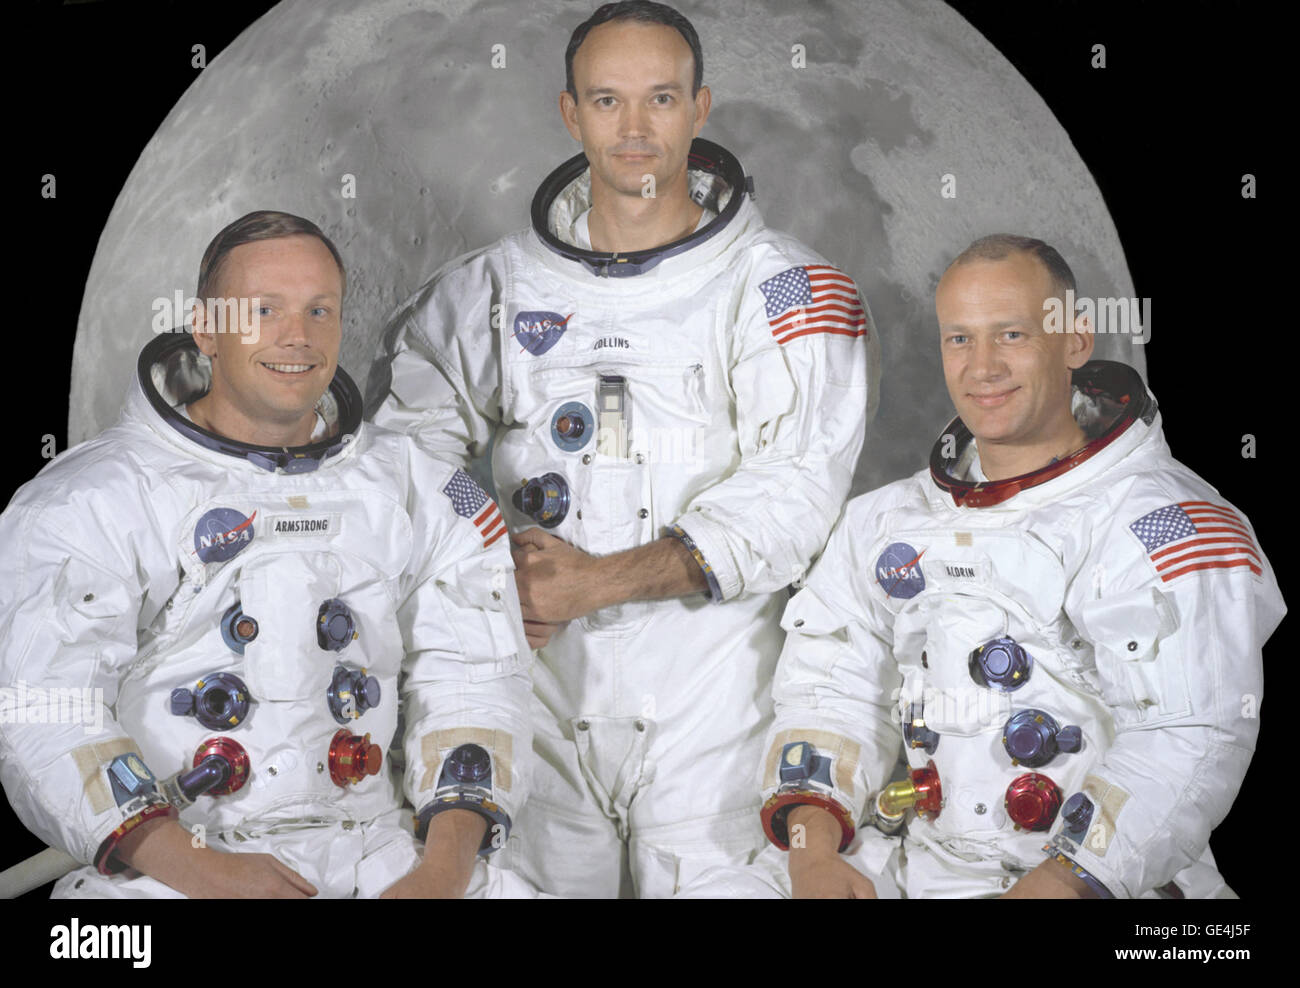 Portrait du premier équipage de la mission Apollo 11 lunar landing. De gauche à droite ils sont : Commandant, Neil A. Armstrong, pilote du module de commande, Michael Collins, pilote du module lunaire, et d'Edwin E. Aldrin Jr. le 20 juillet 1969 à 4:18 pm HAE, le module lunaire Eagle" a atterri dans une région de la Lune appelé la Mare Tranquillitatis, également connu sous le nom de la mer de la tranquillité. Après avoir assuré son engin, Armstrong a demandé par radio à la terre : "Houston, Tranquility Base here, the Eagle has Landed". À 10:56 h le soir même en présence d'un public de télévision dans le monde entier, Neil Ar Banque D'Images